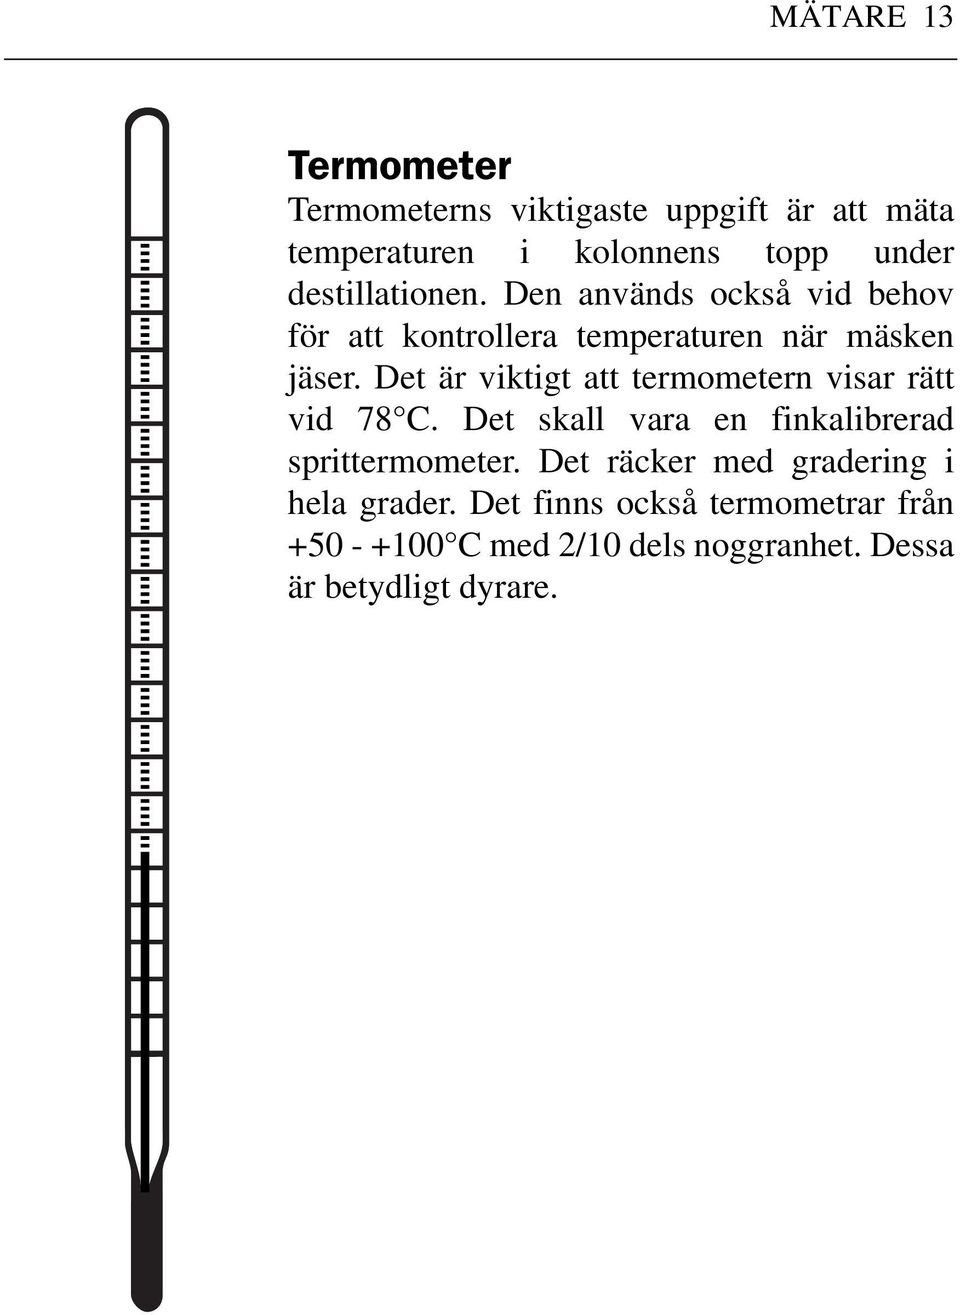 Det är viktigt att termometern visar rätt vid 78 C. Det skall vara en finkalibrerad sprittermometer.